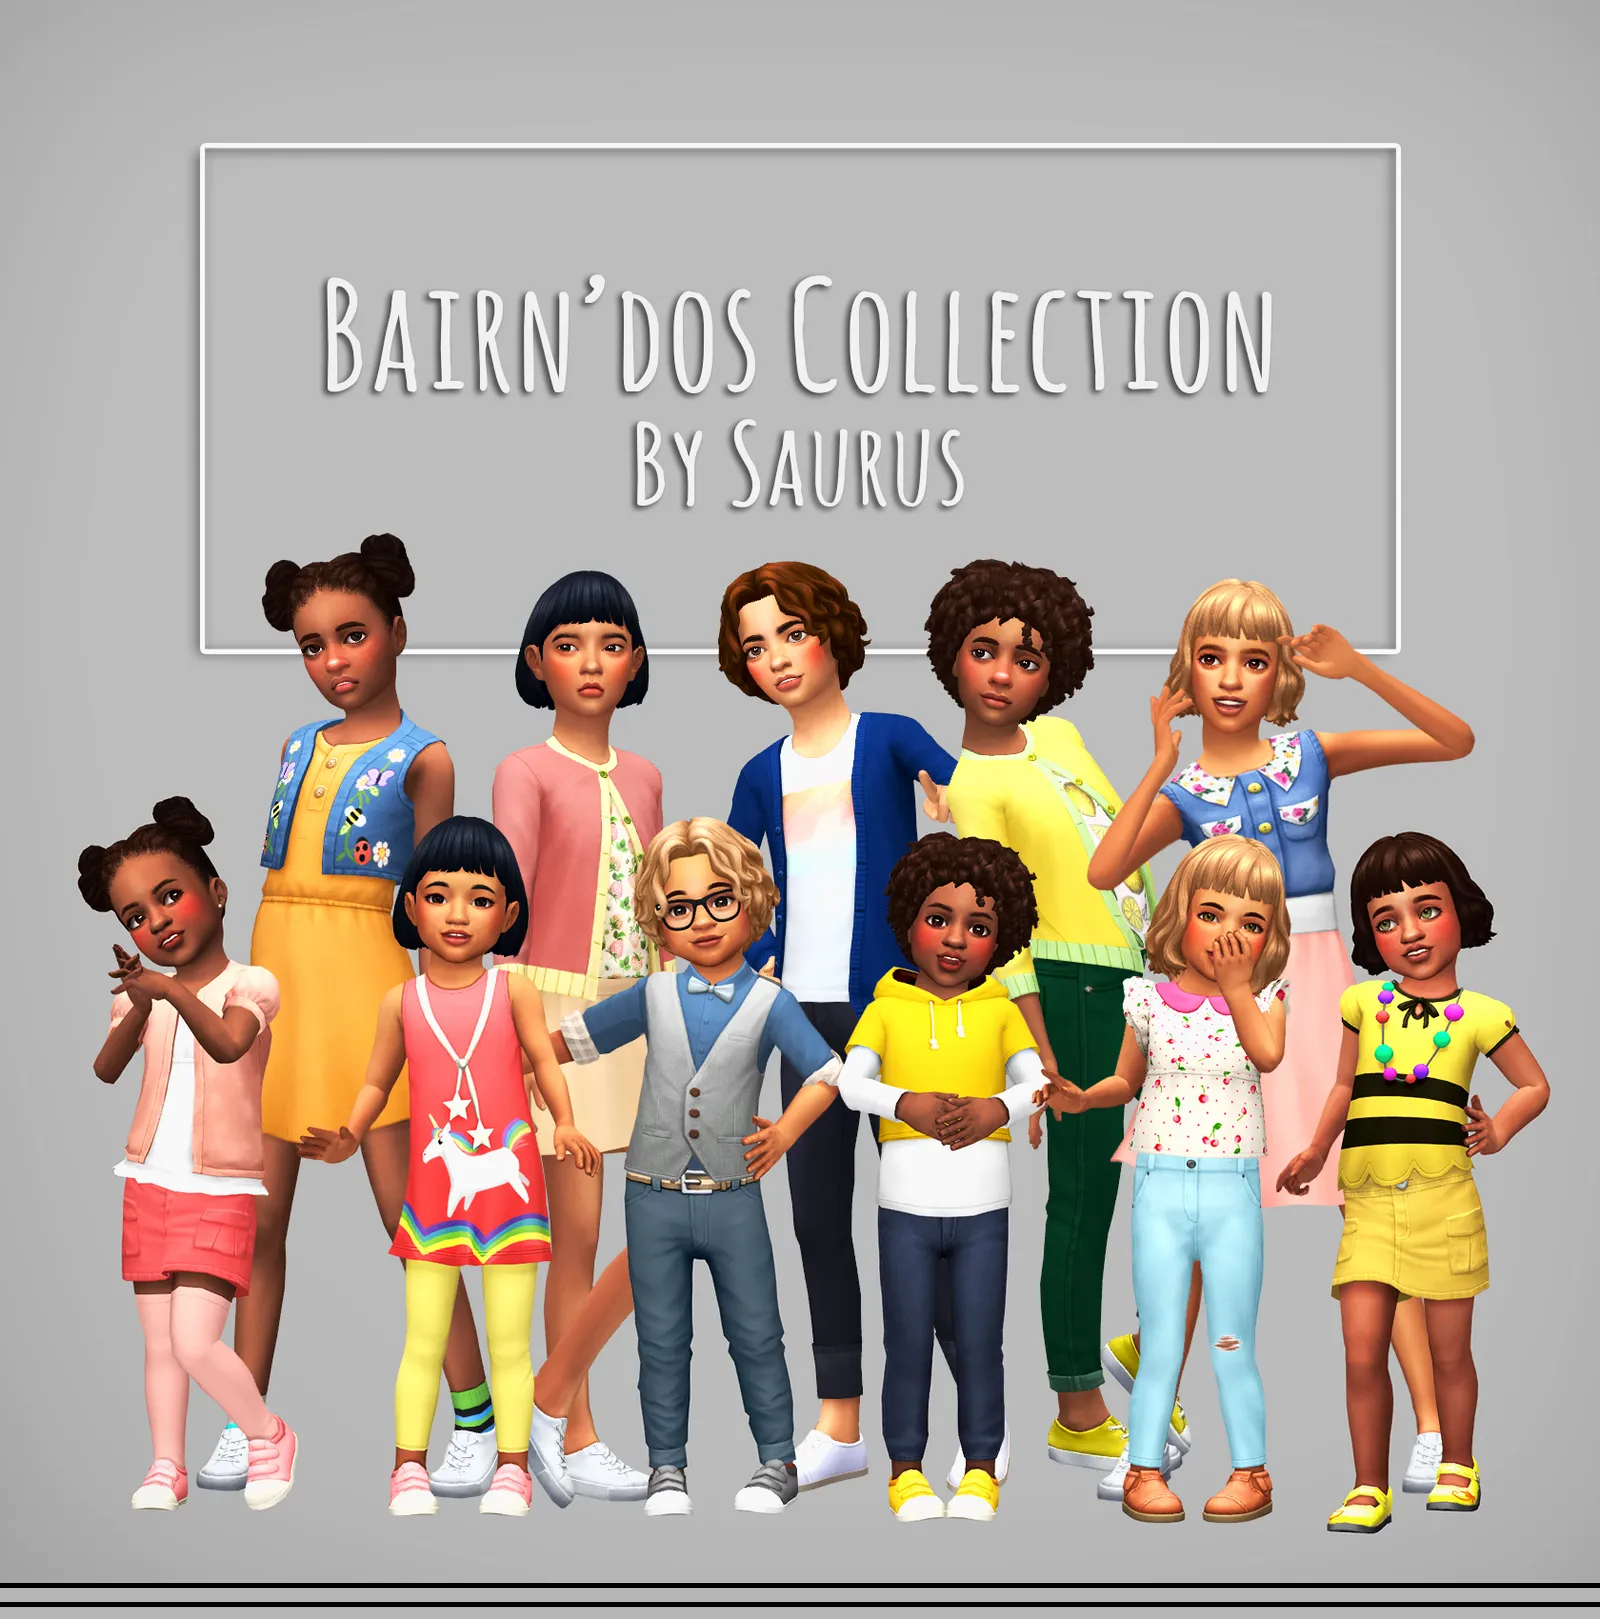 Bairn'dos Collection